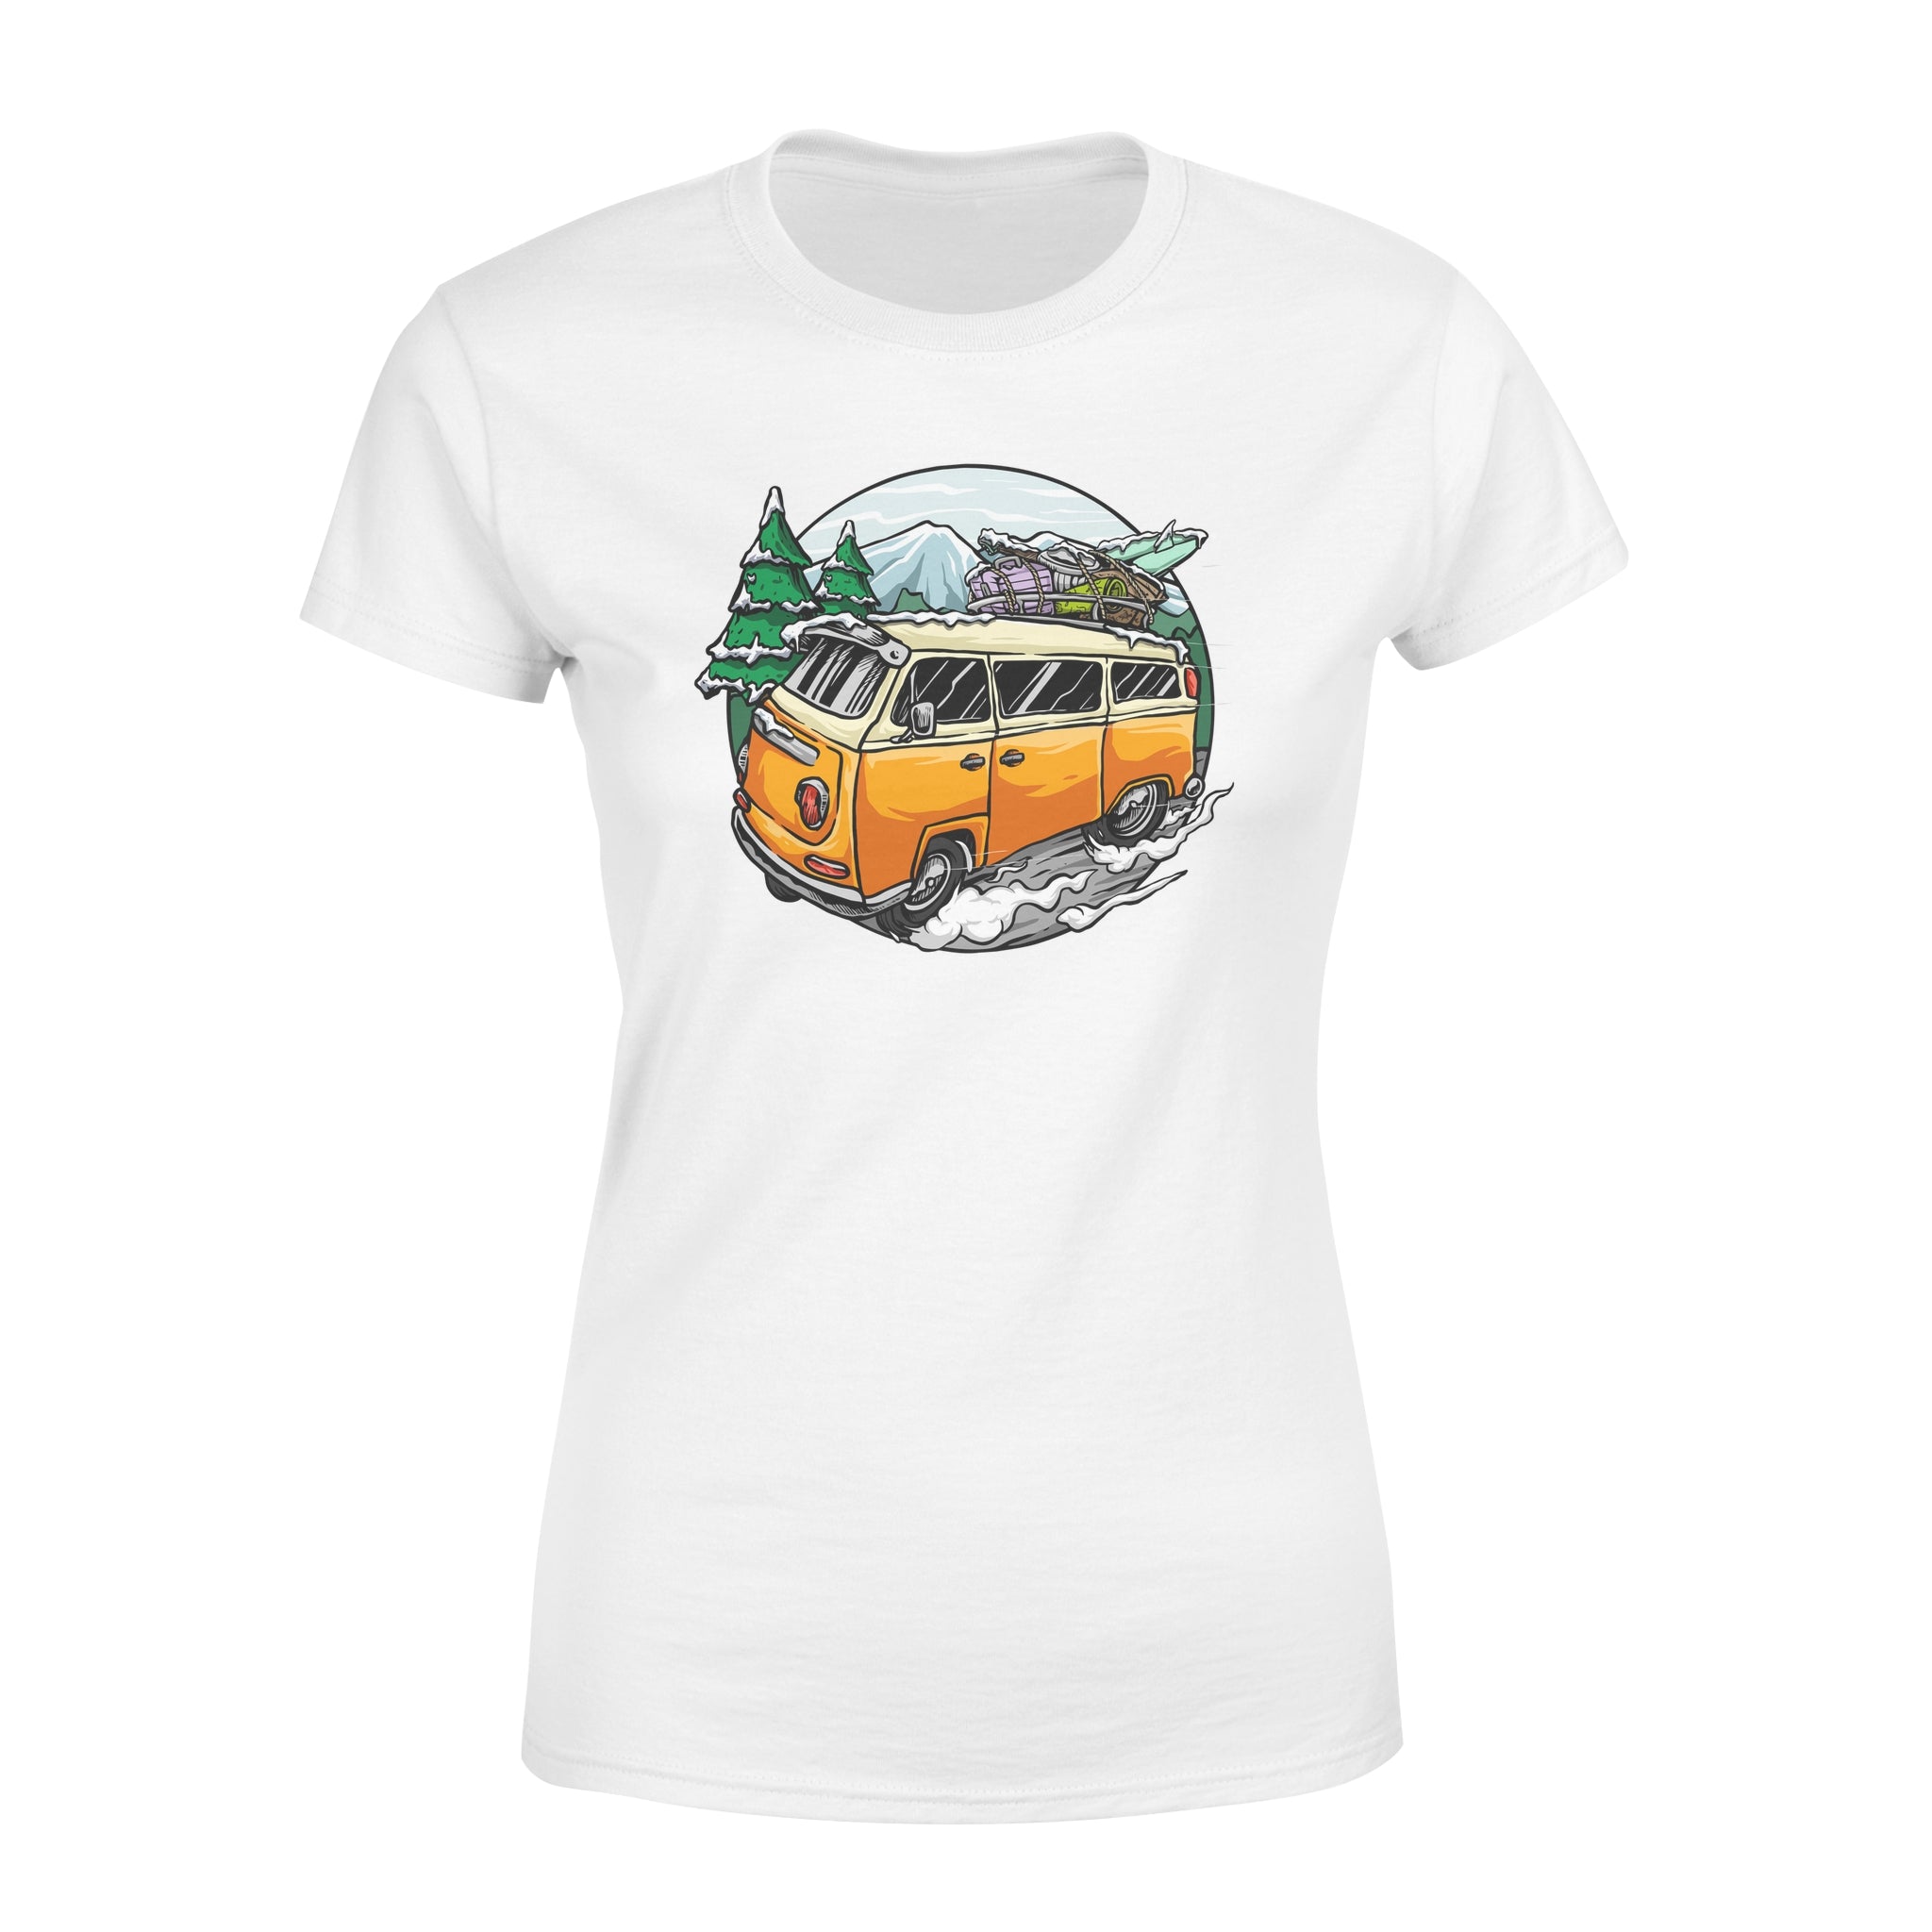 Winter Travel -  Women's T-shirt